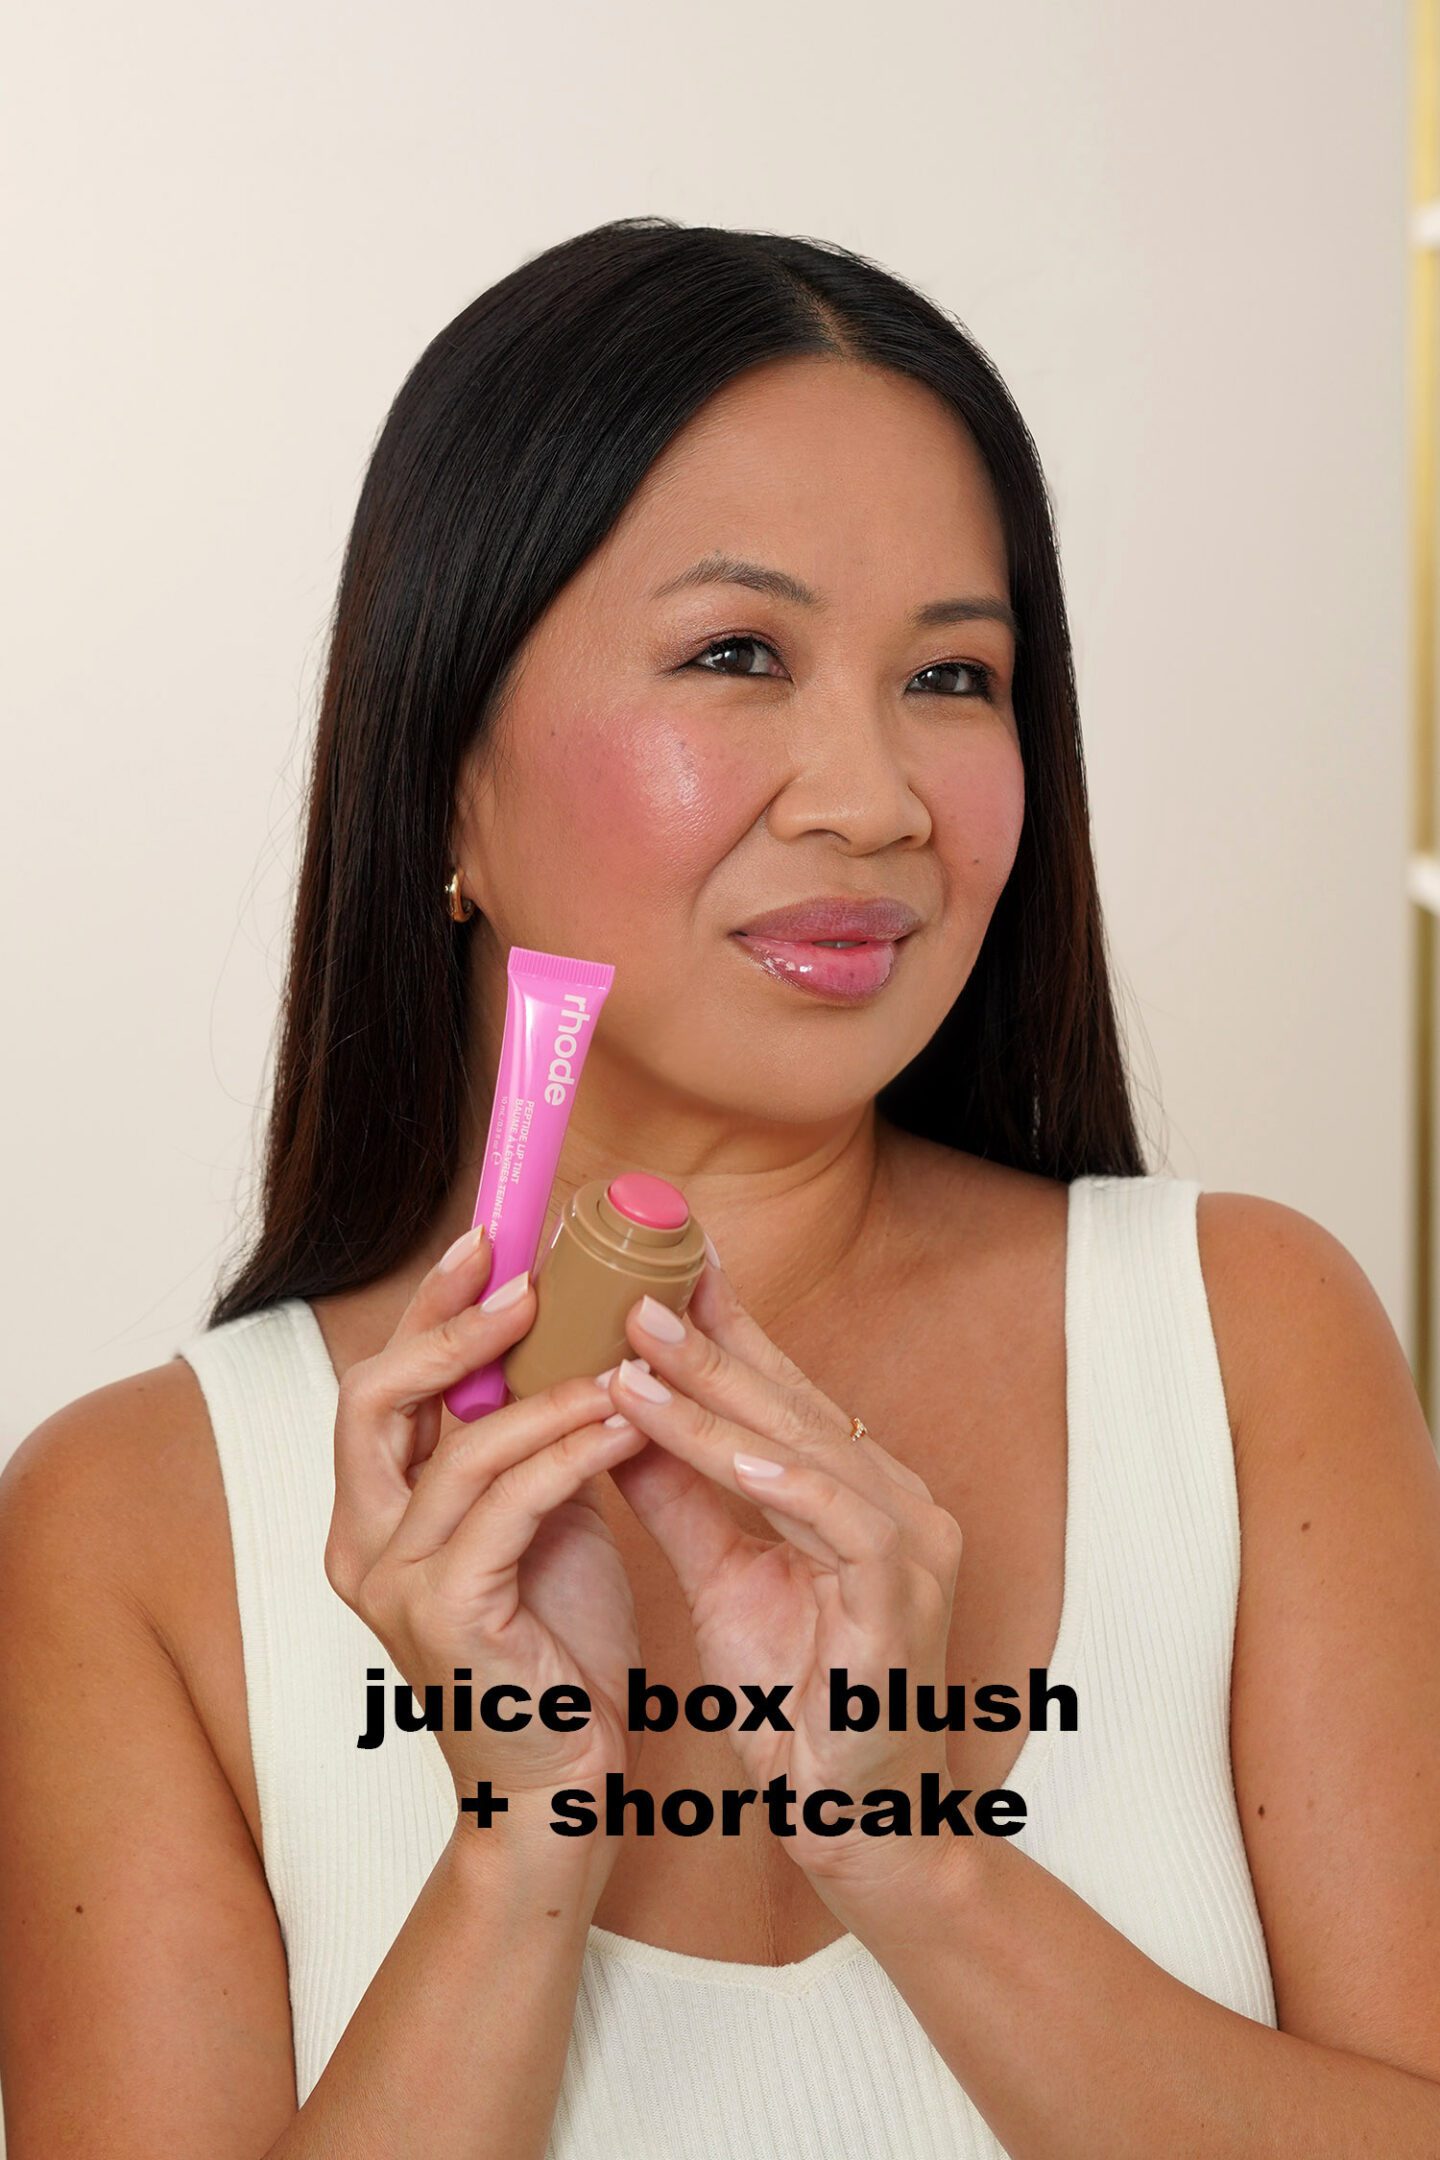 rhode pocket blush in juice box, lip gloss shortcake